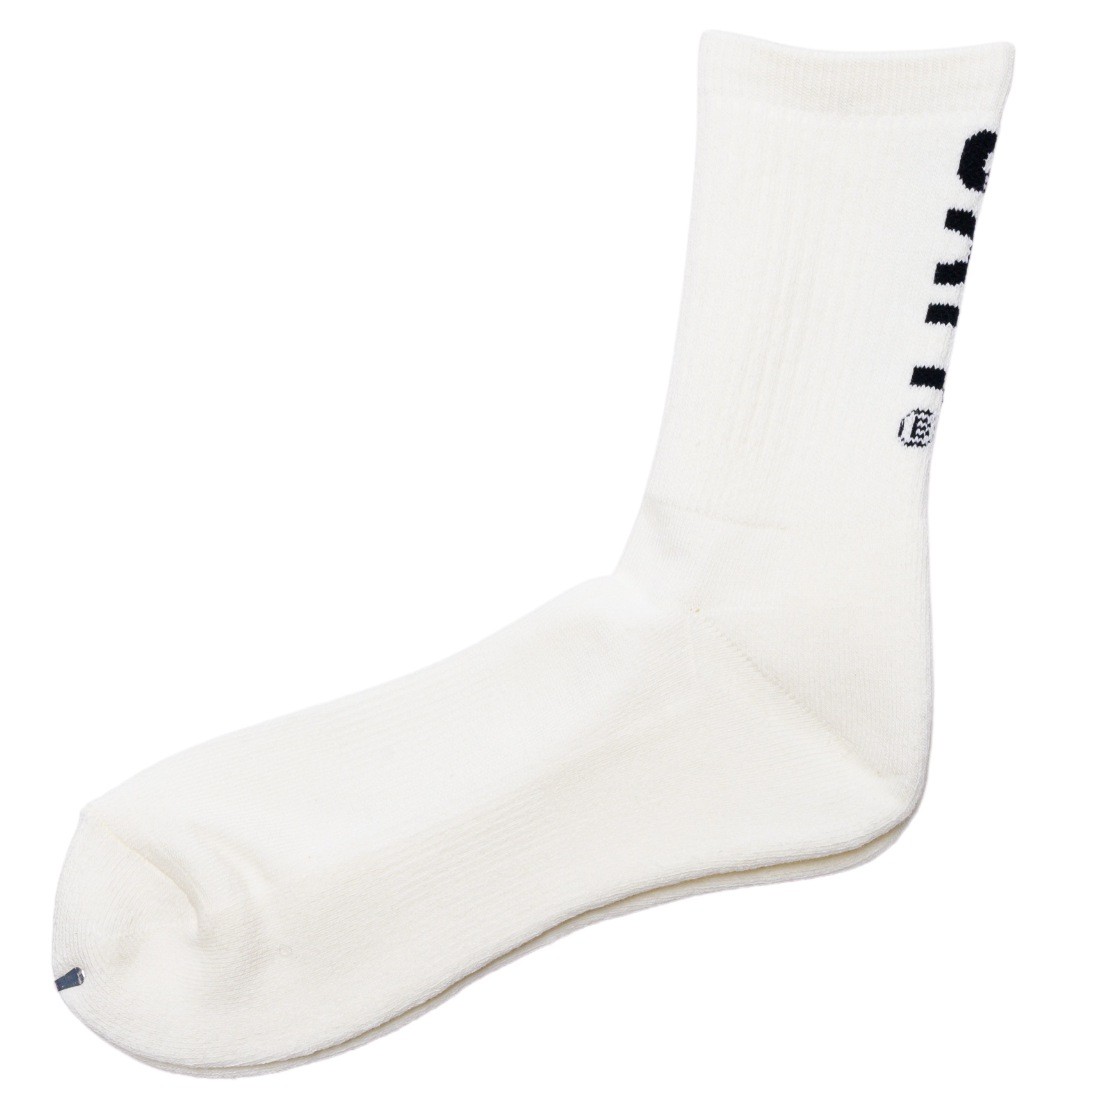 BAIT Men BAIT Logo Crew Socks - Made In Japan white